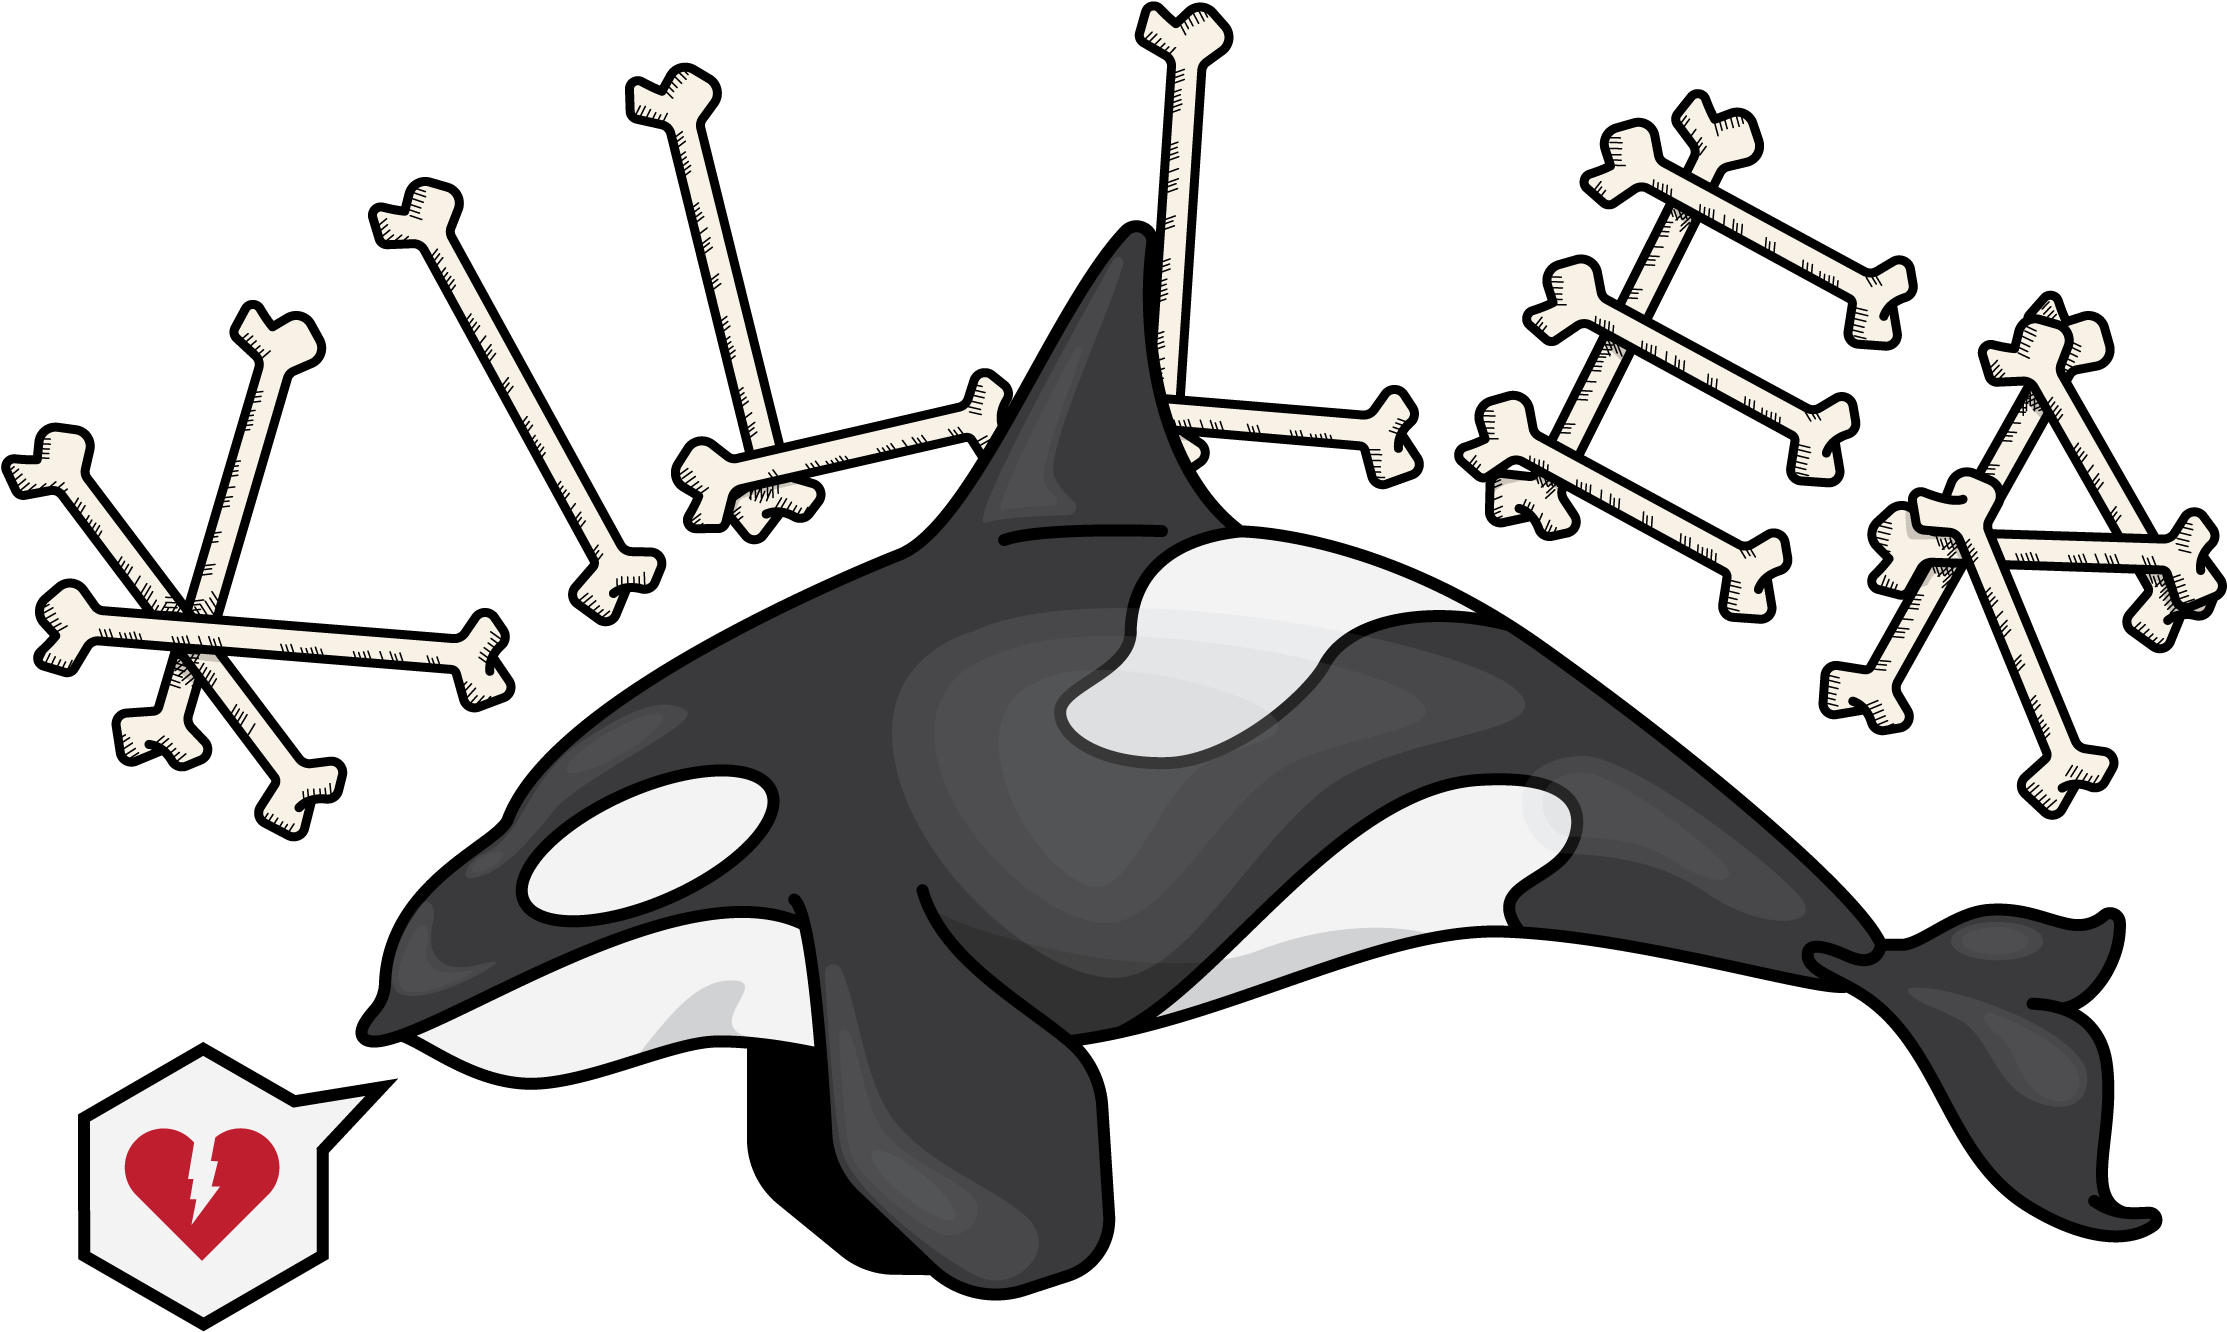 Killer Whale (2376x1584)